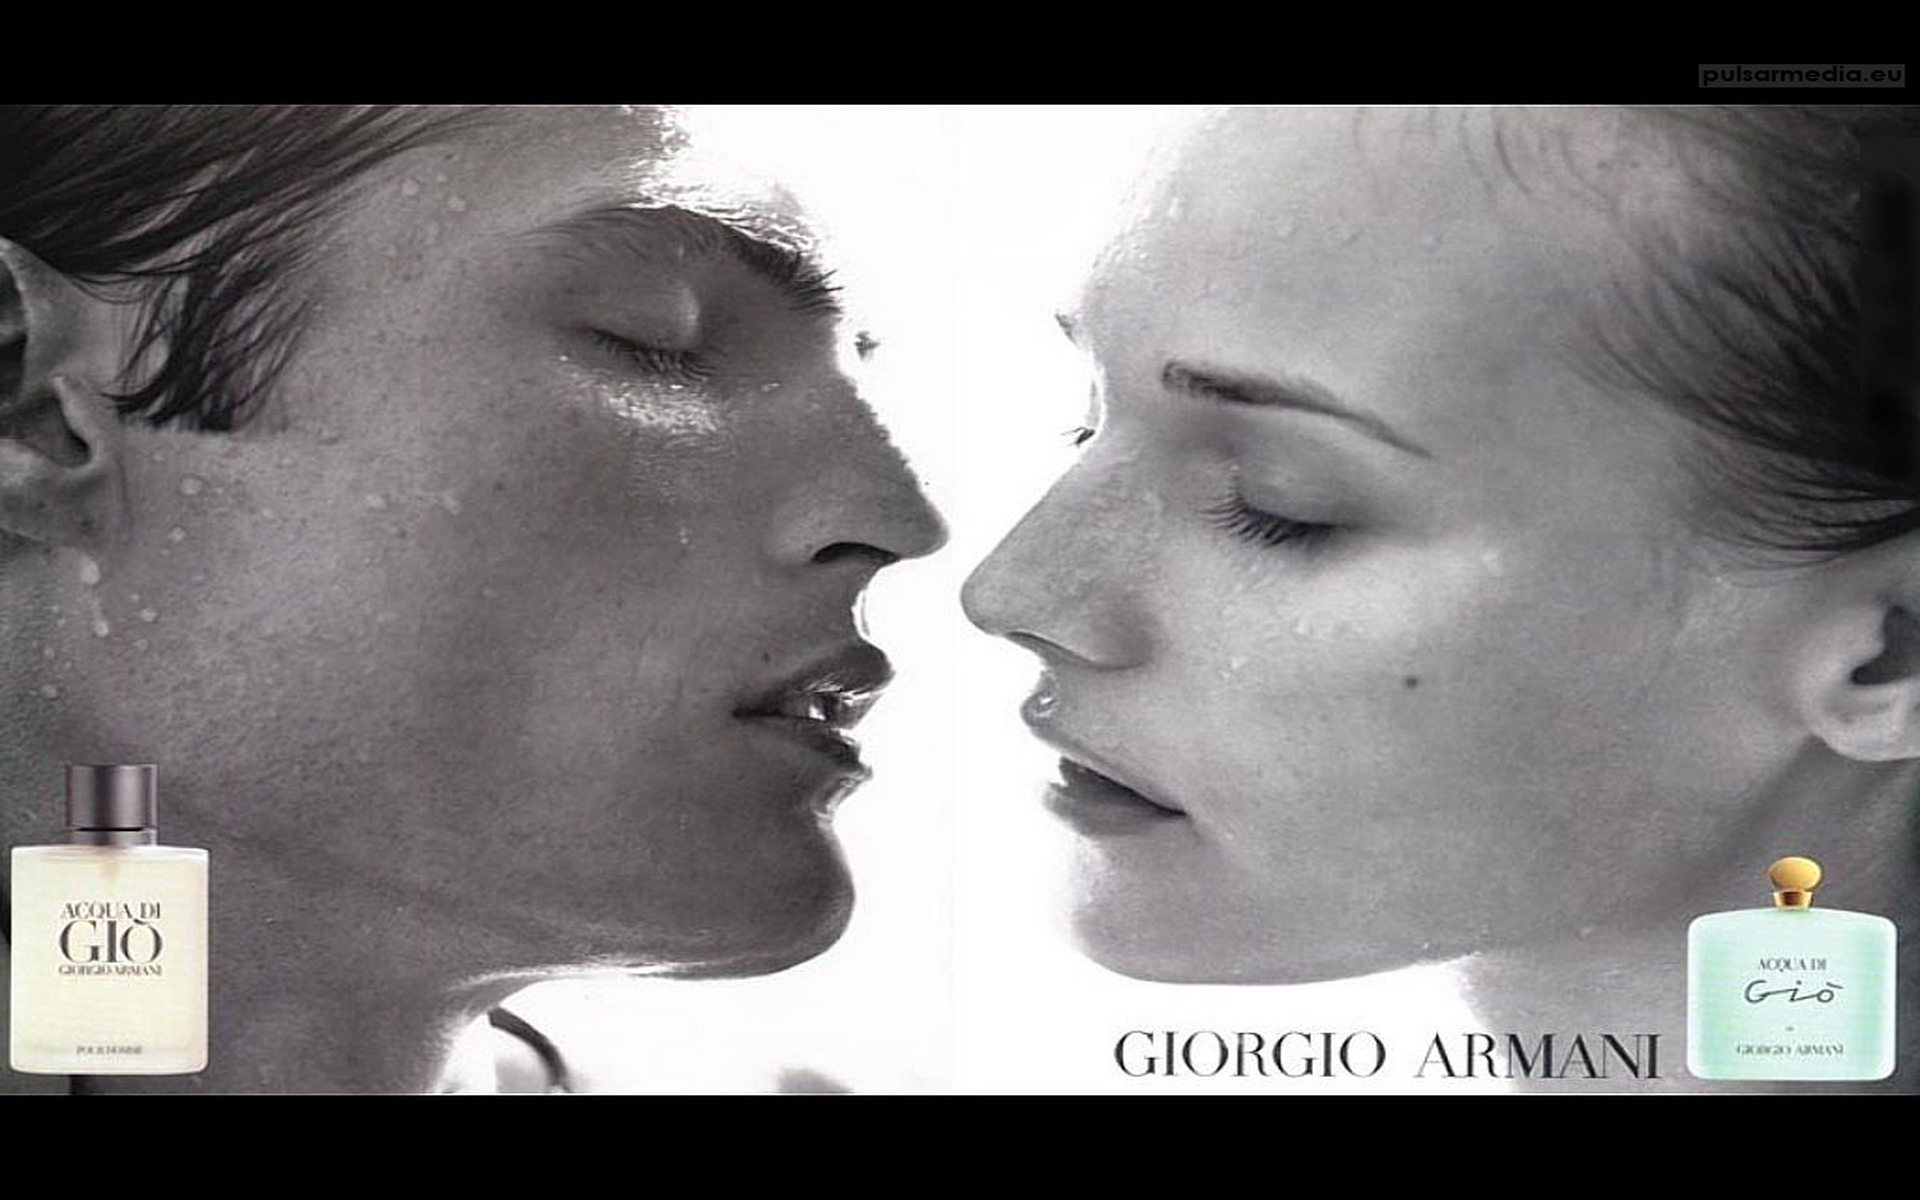 giorgio_armani_acqua_di_gio men and women model bay bayan model afiş reklam.jpg